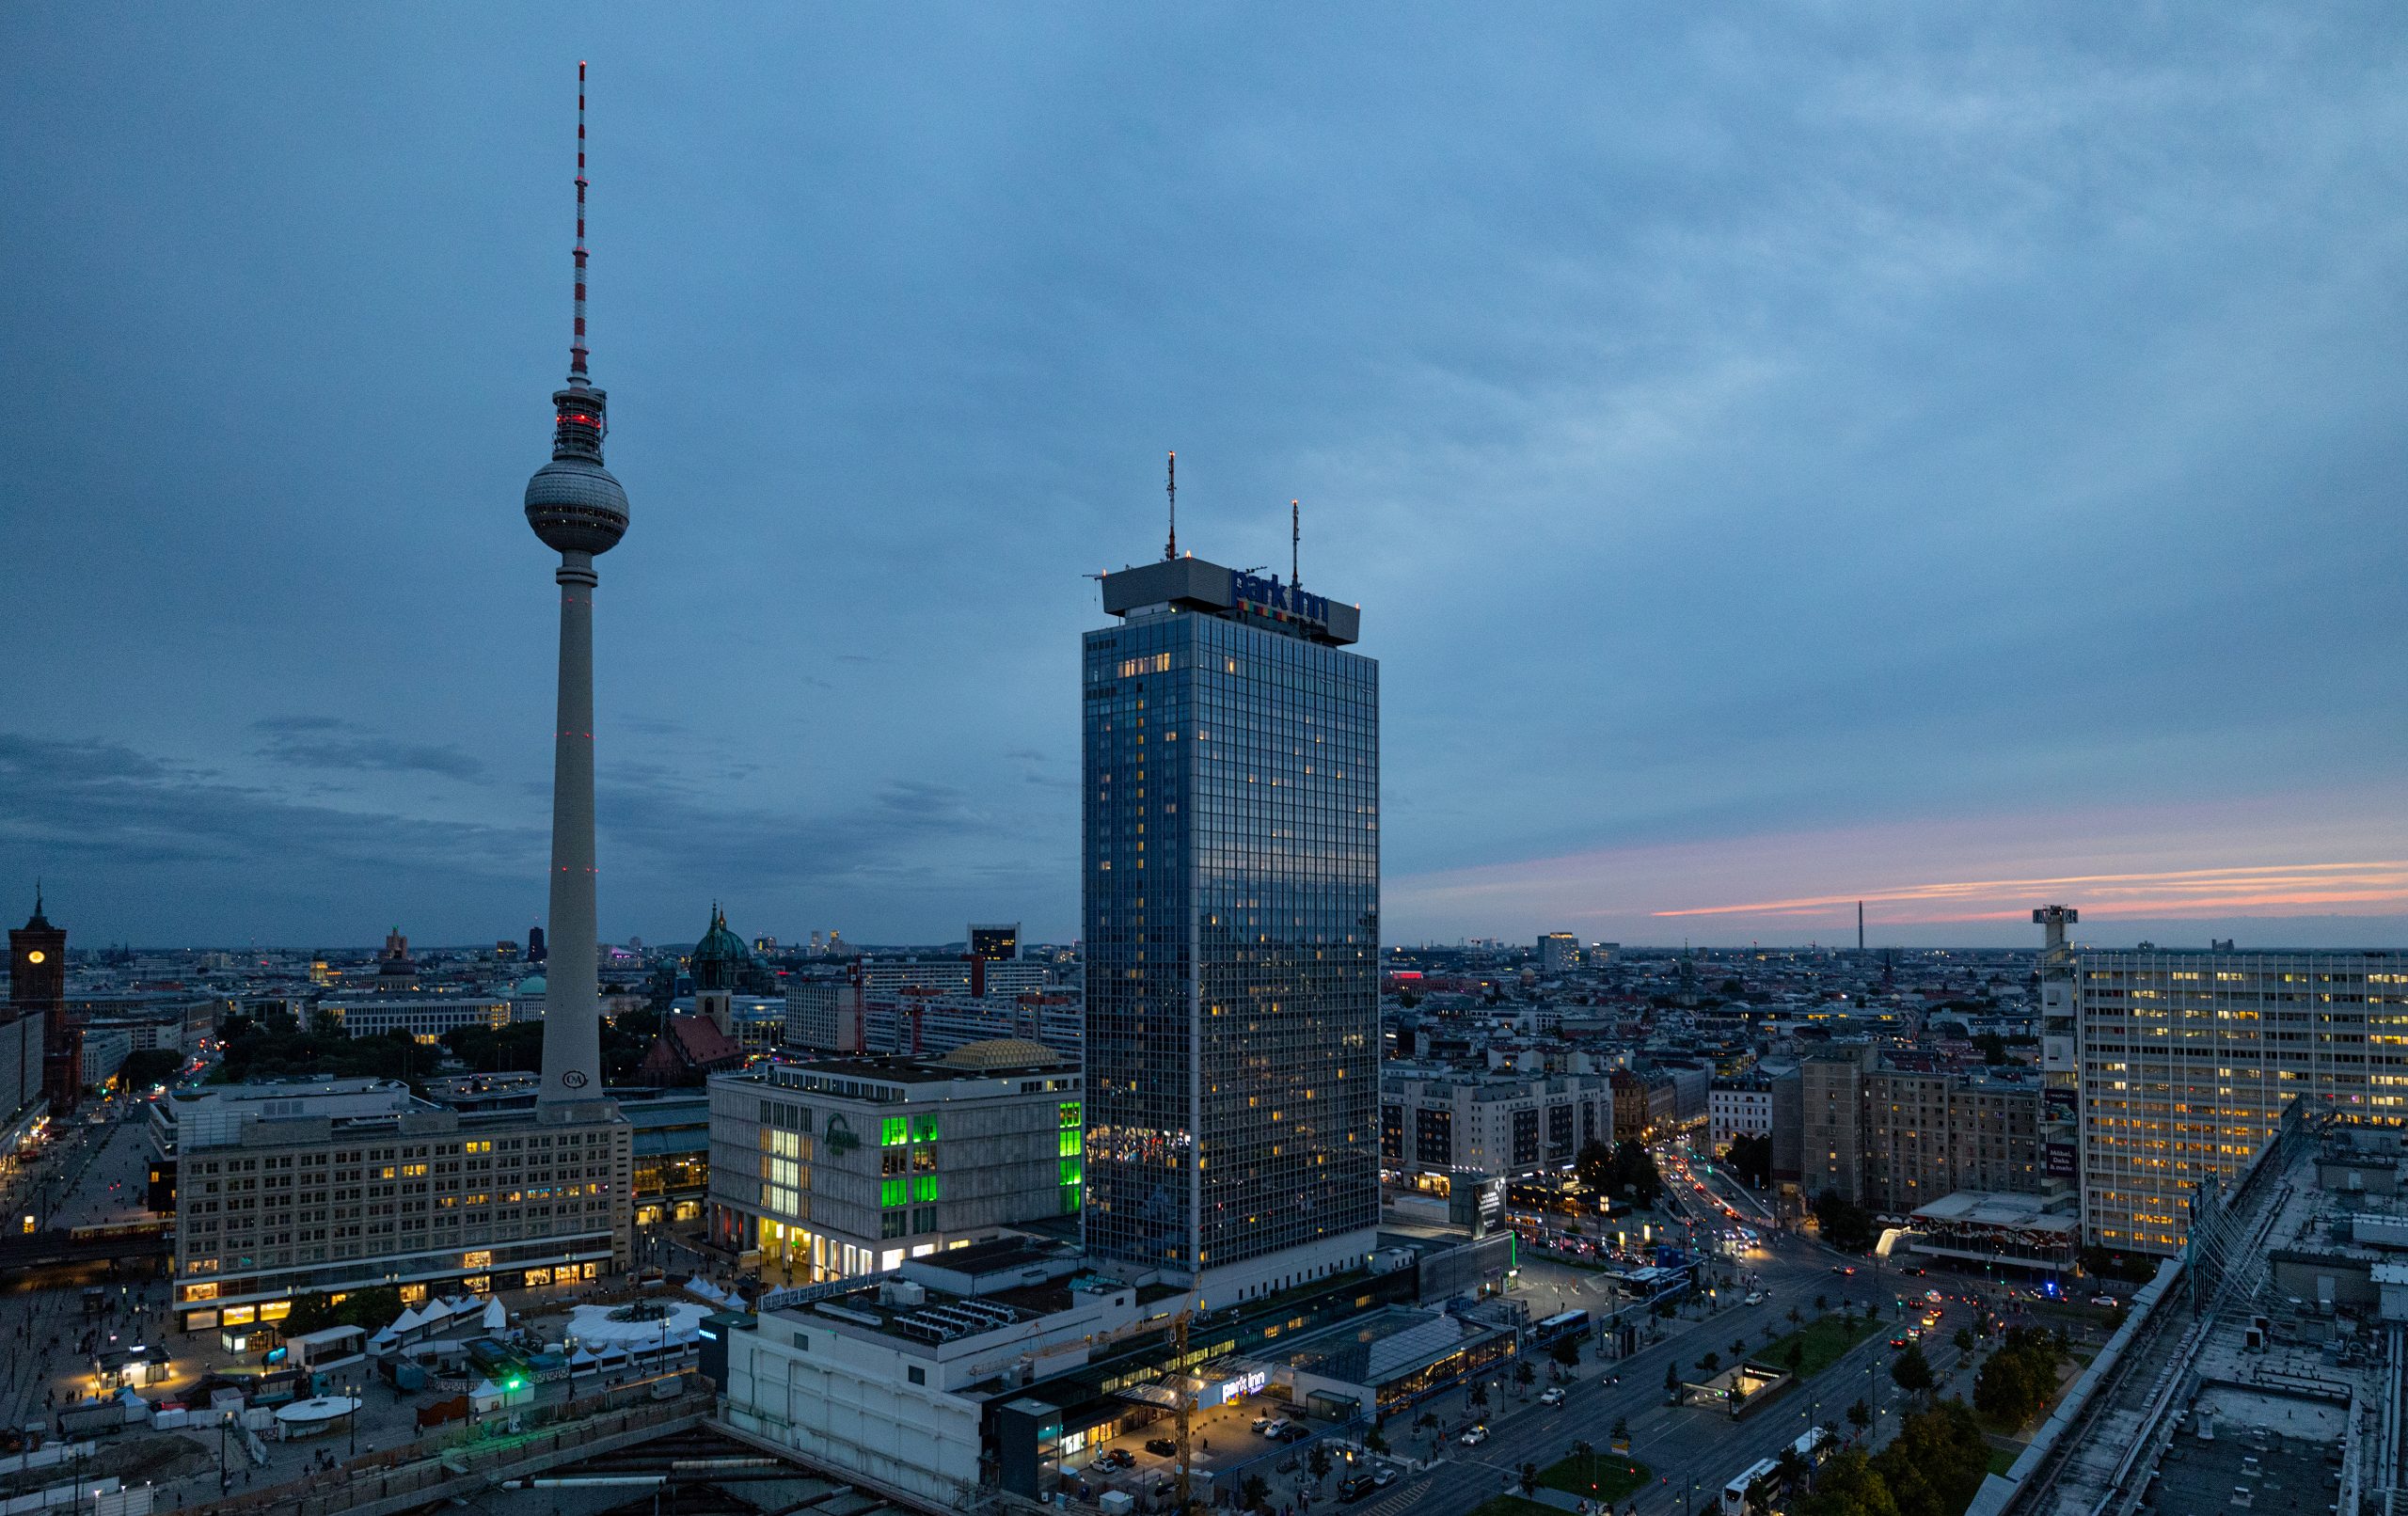 Aussicht von der Dachterasse auf Berlin mit Fernsehturm